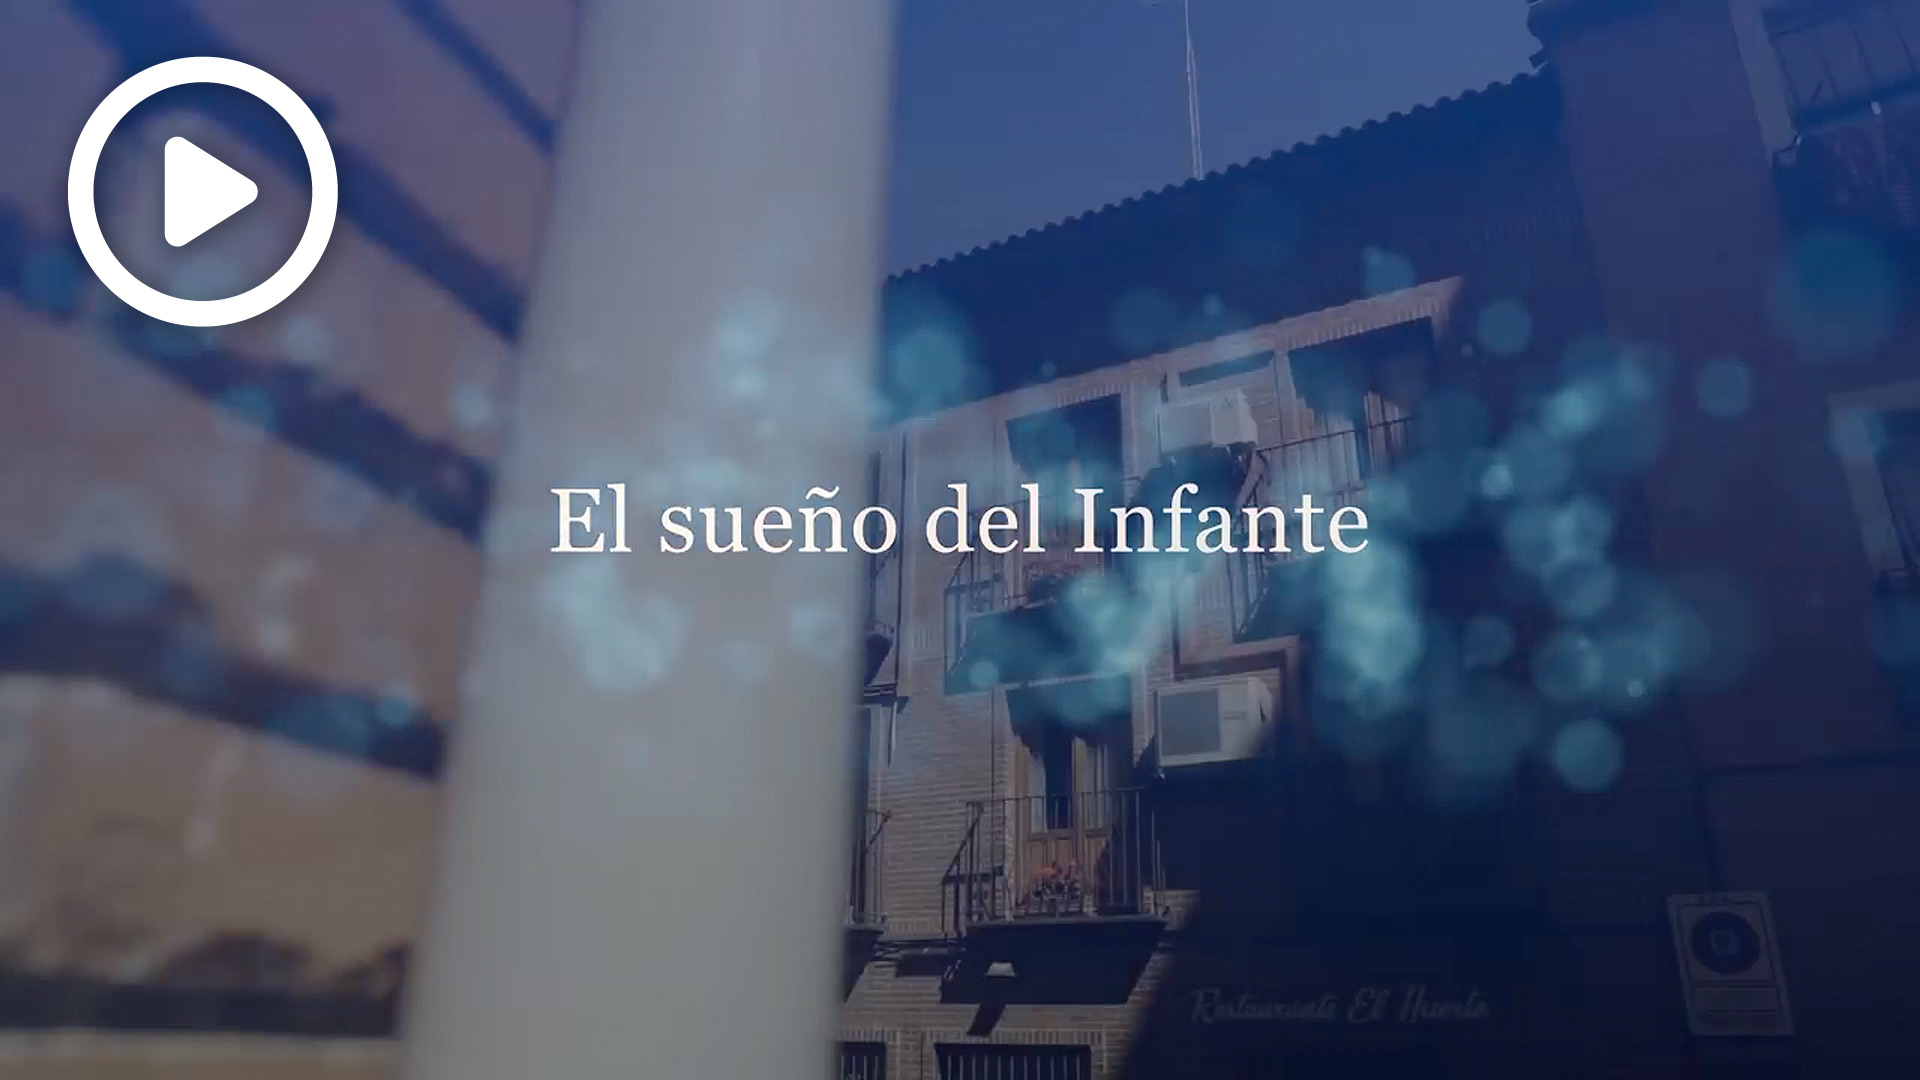 Vídeo "El sueño del Infante"